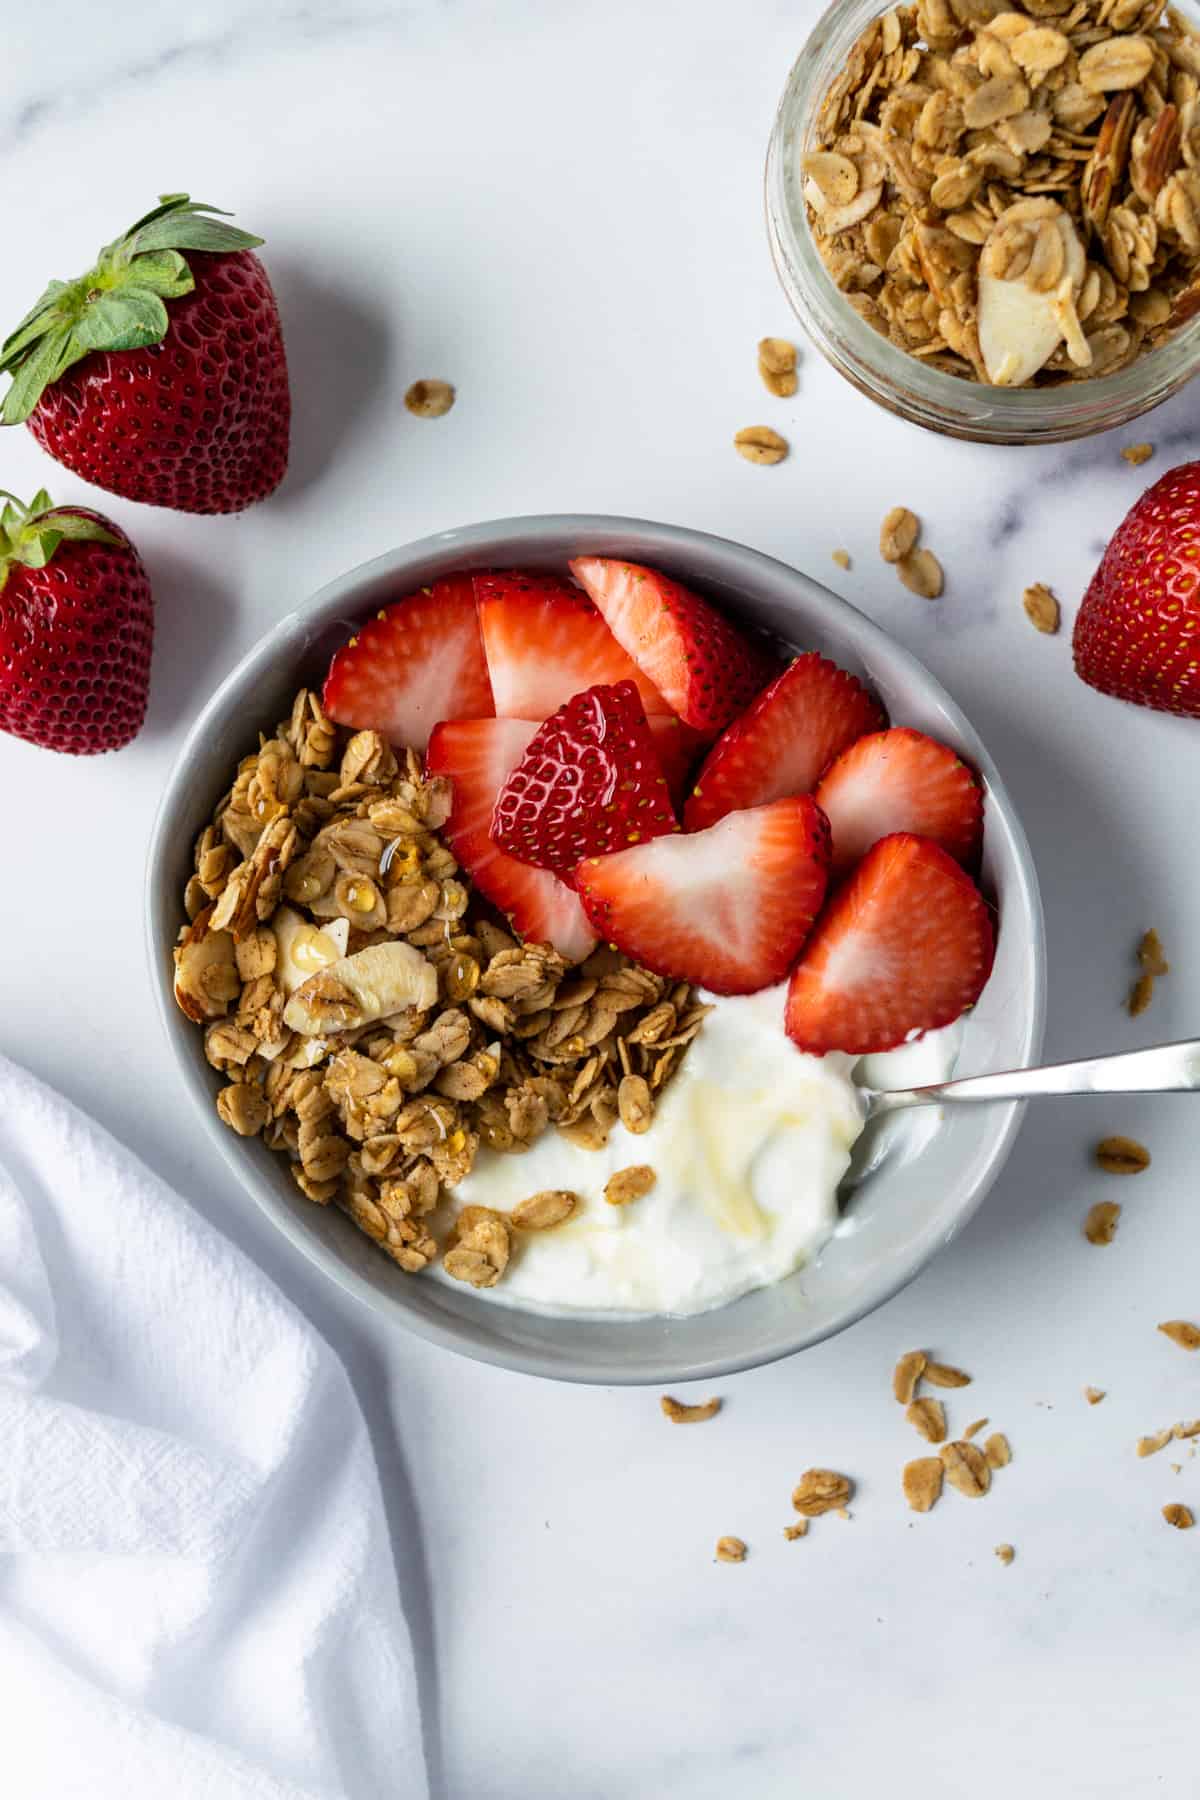 Yogurt Granola Bowl with strawberries.